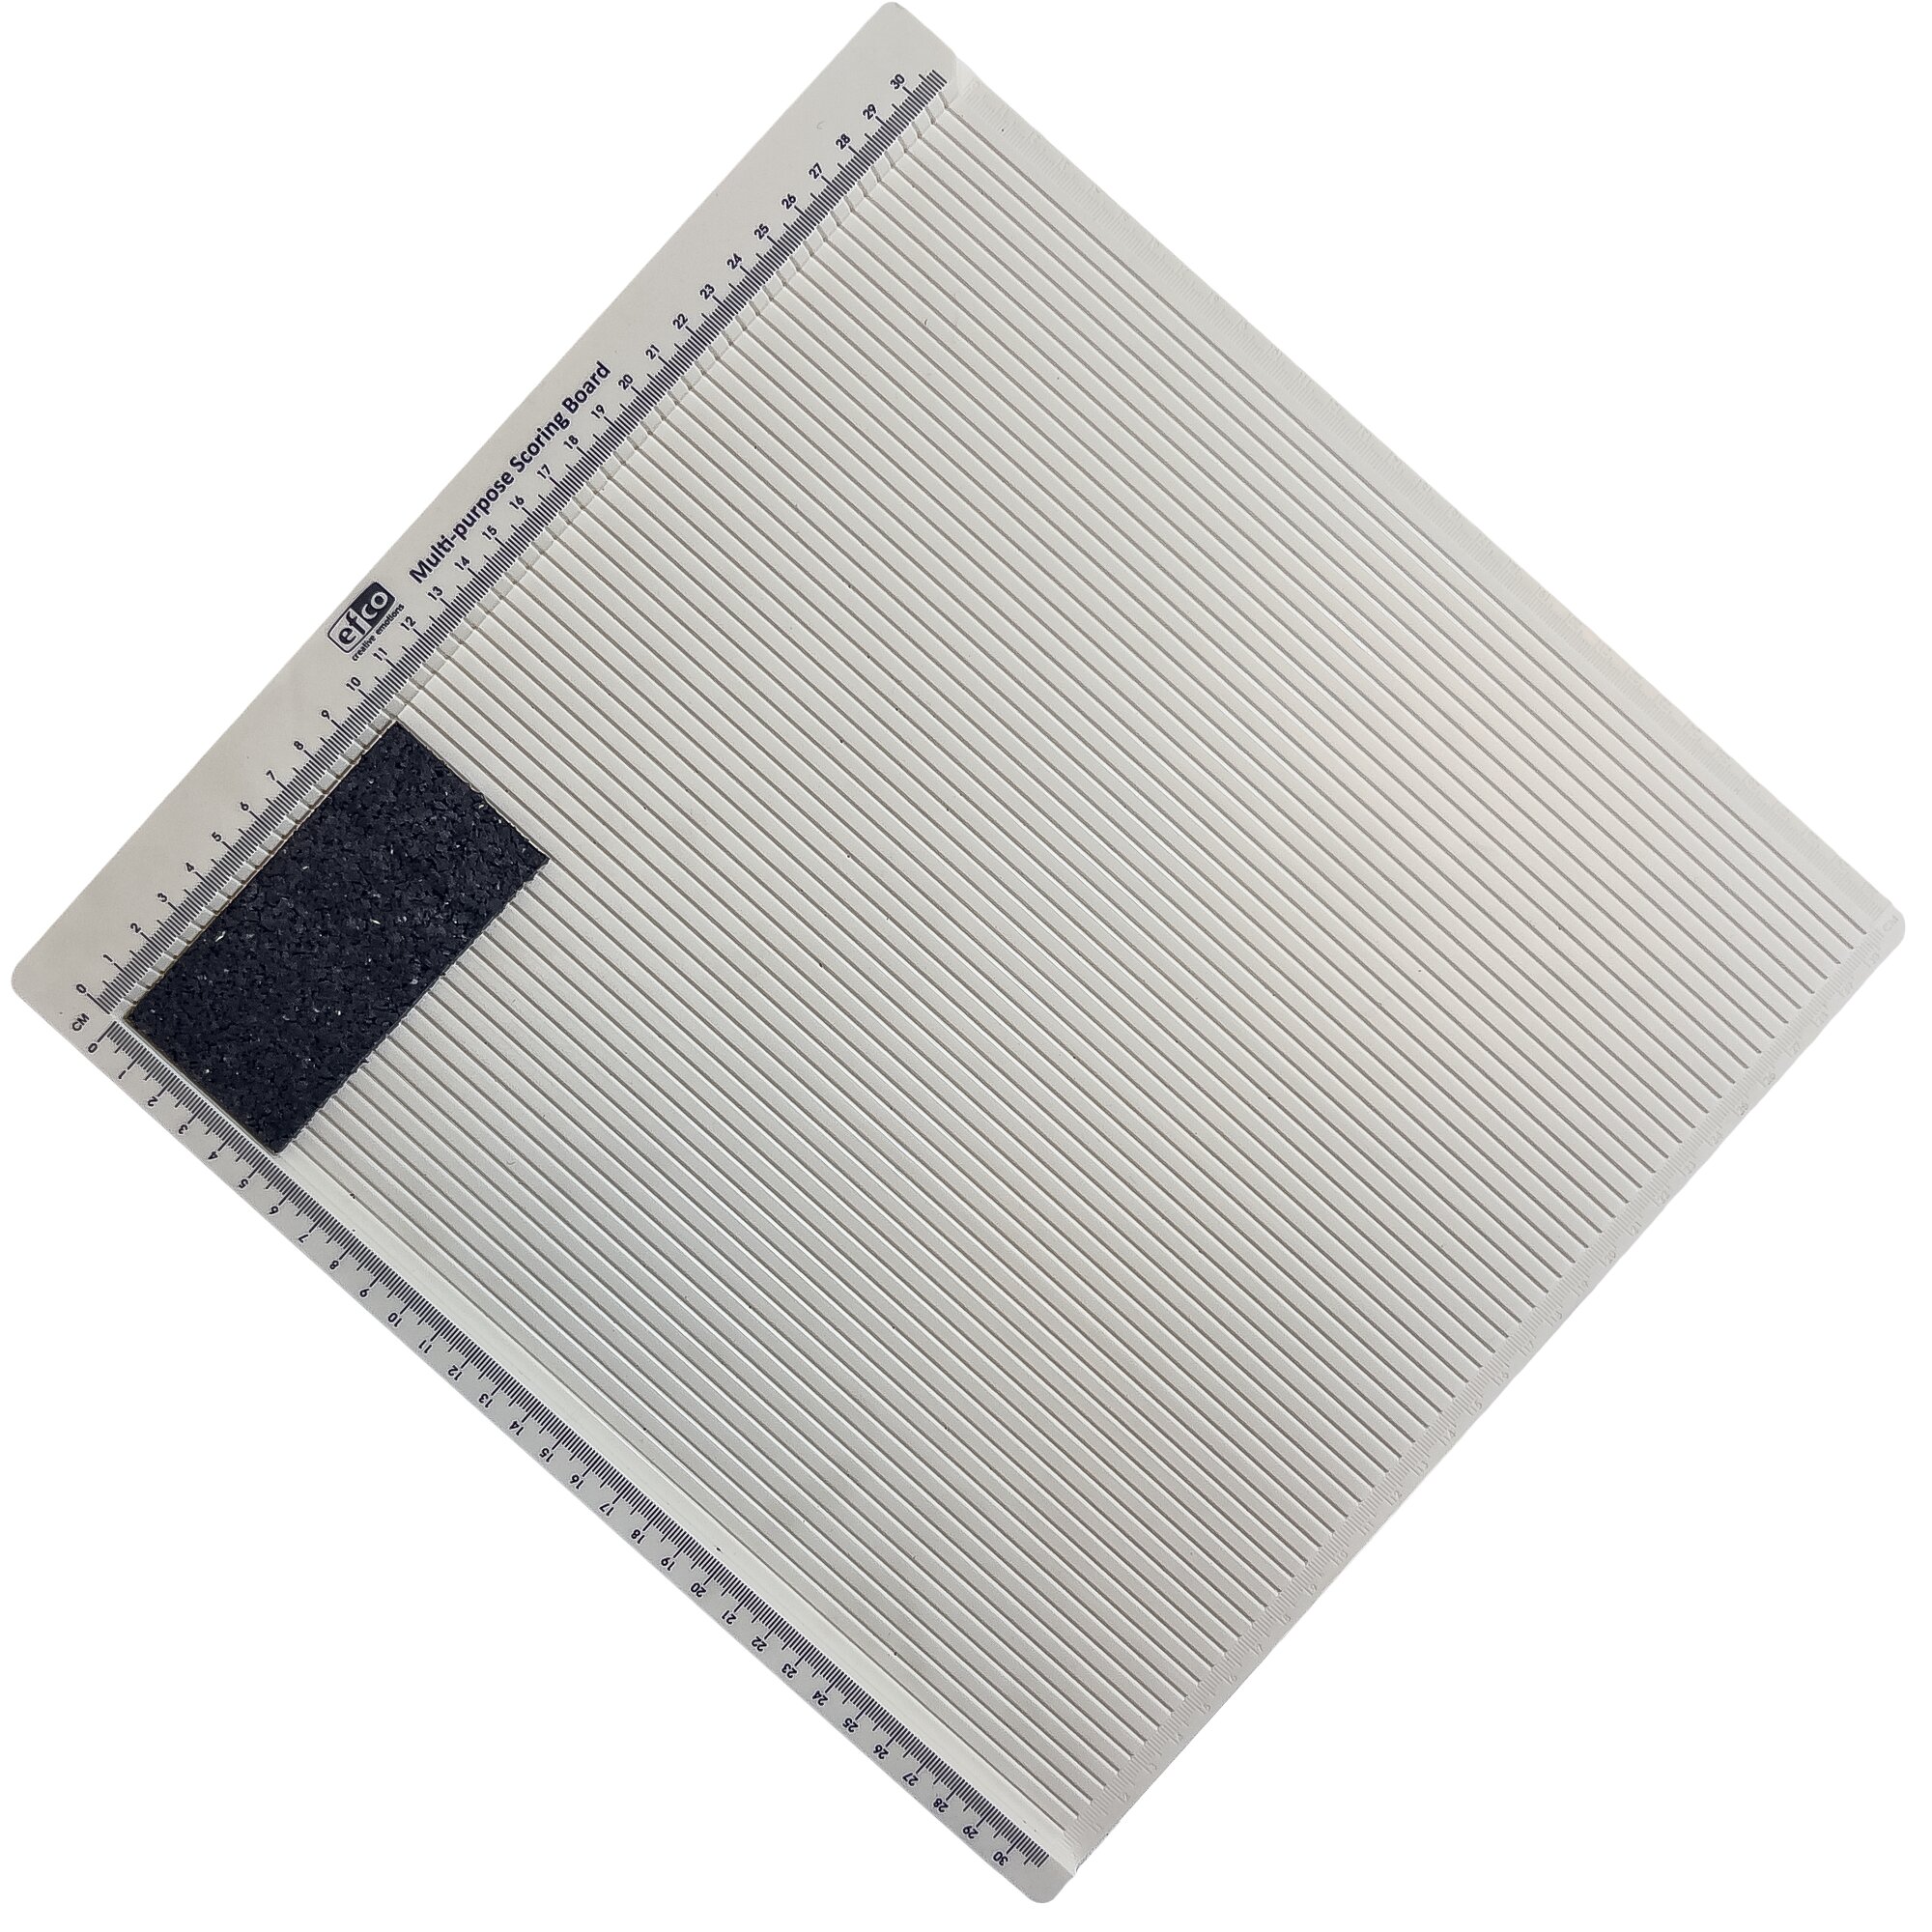 Gumová univerzální podložka FLOMA UniPad - délka 10 cm, šířka 5 cm, výška 1 cm